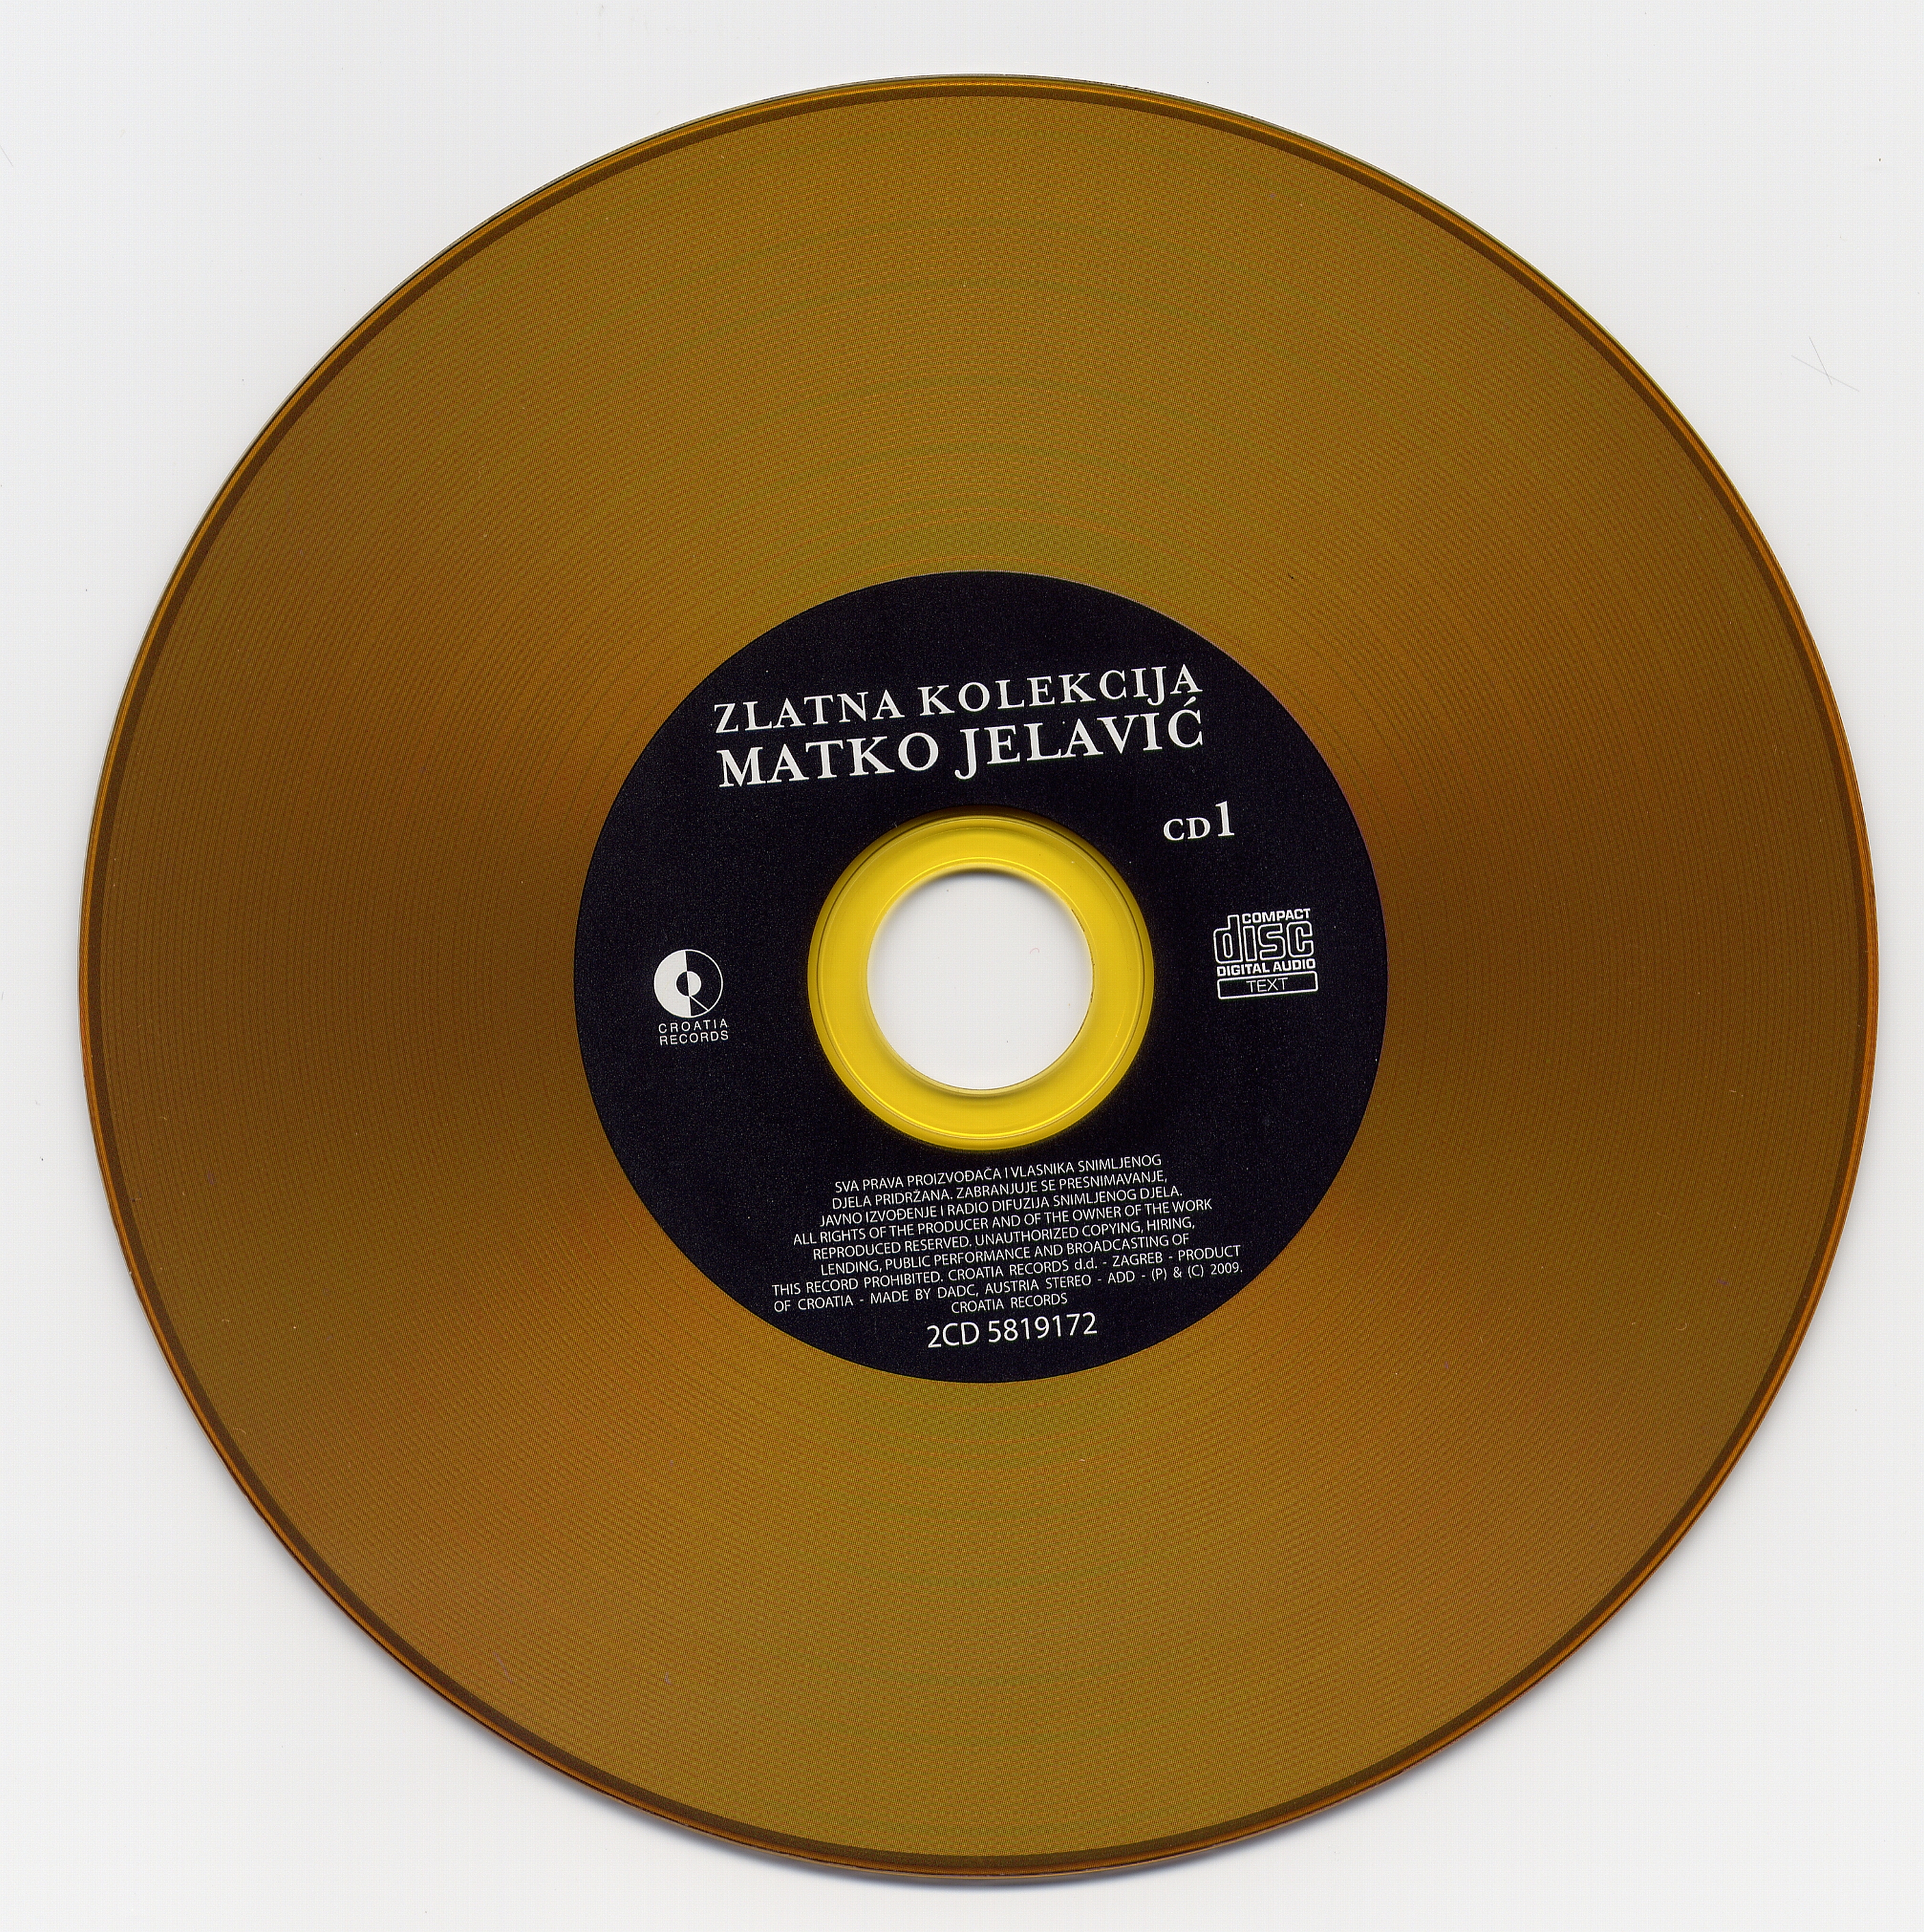 Matko Jelavic Zlatna kolekcija 2009 cd 1